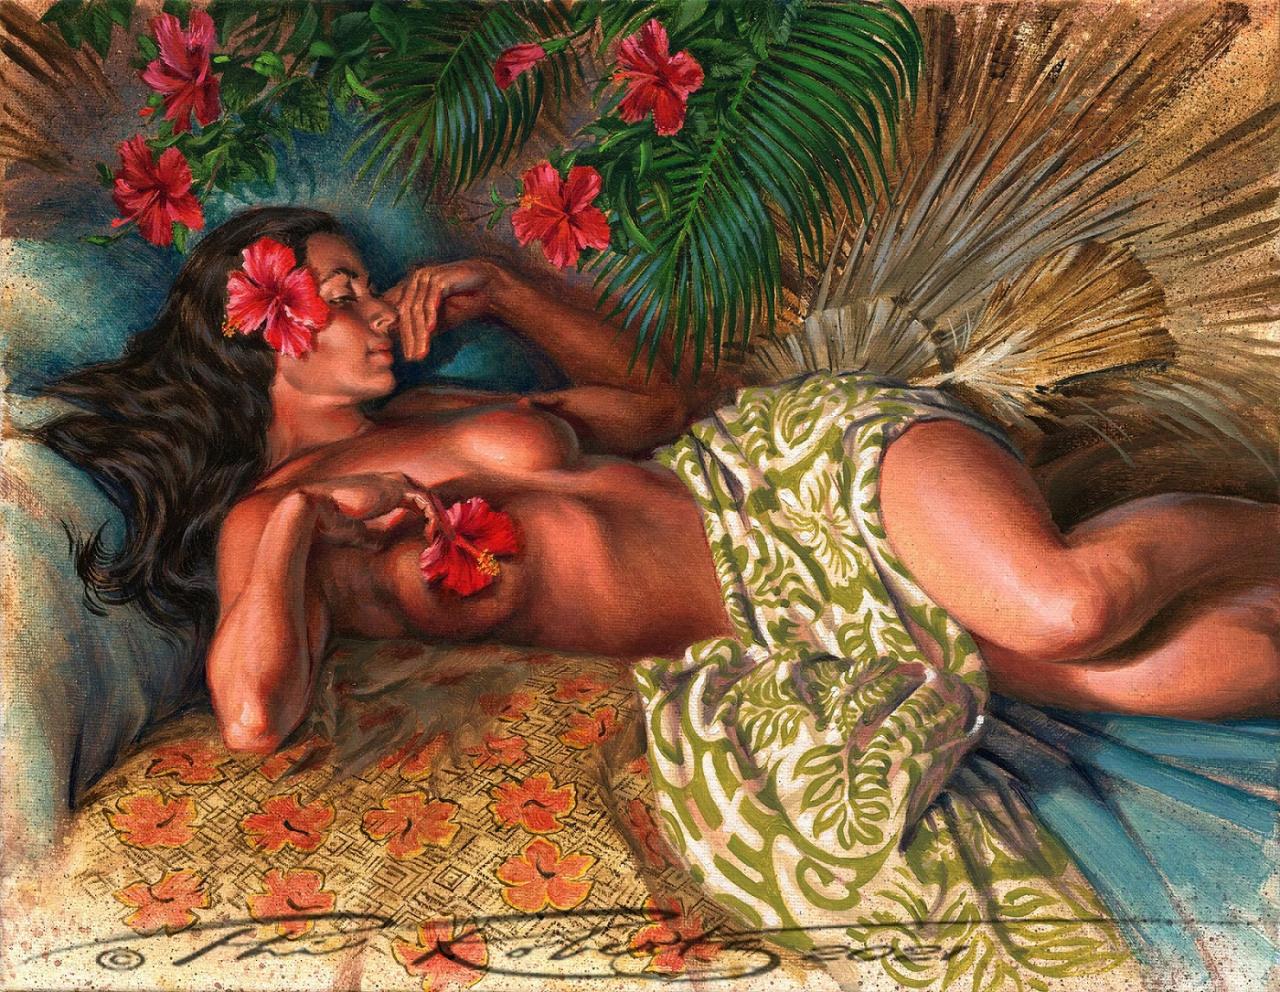 Рай и ад, полный раскрепощенных женщин: какими были сексуальные обычаи на Таити